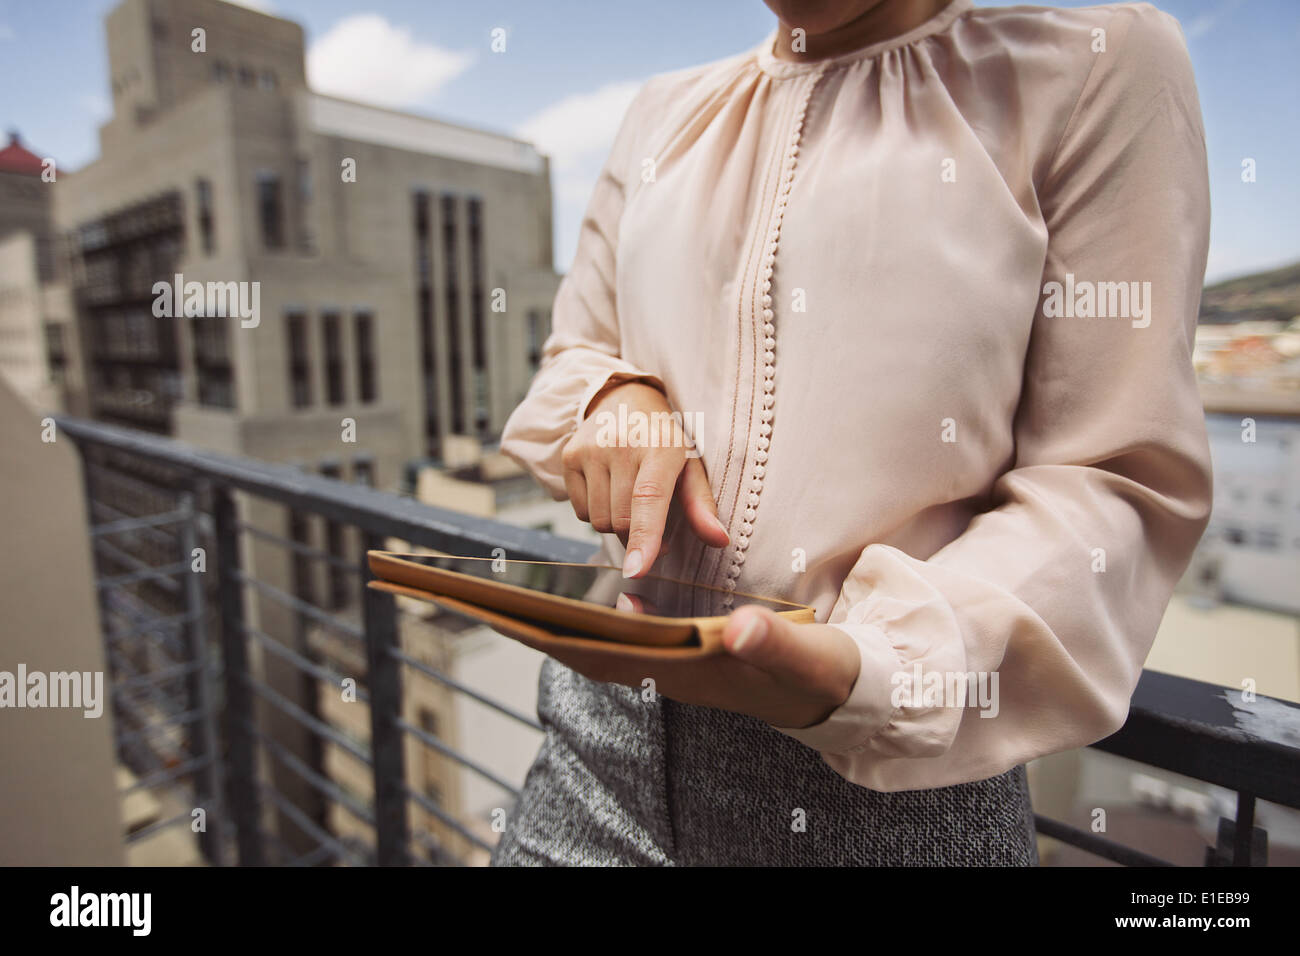 Giovane donna in piedi sul balcone utilizzando tablet PC. Immagine ritagliata del lavoro femminile sulla tavoletta digitale. Foto Stock